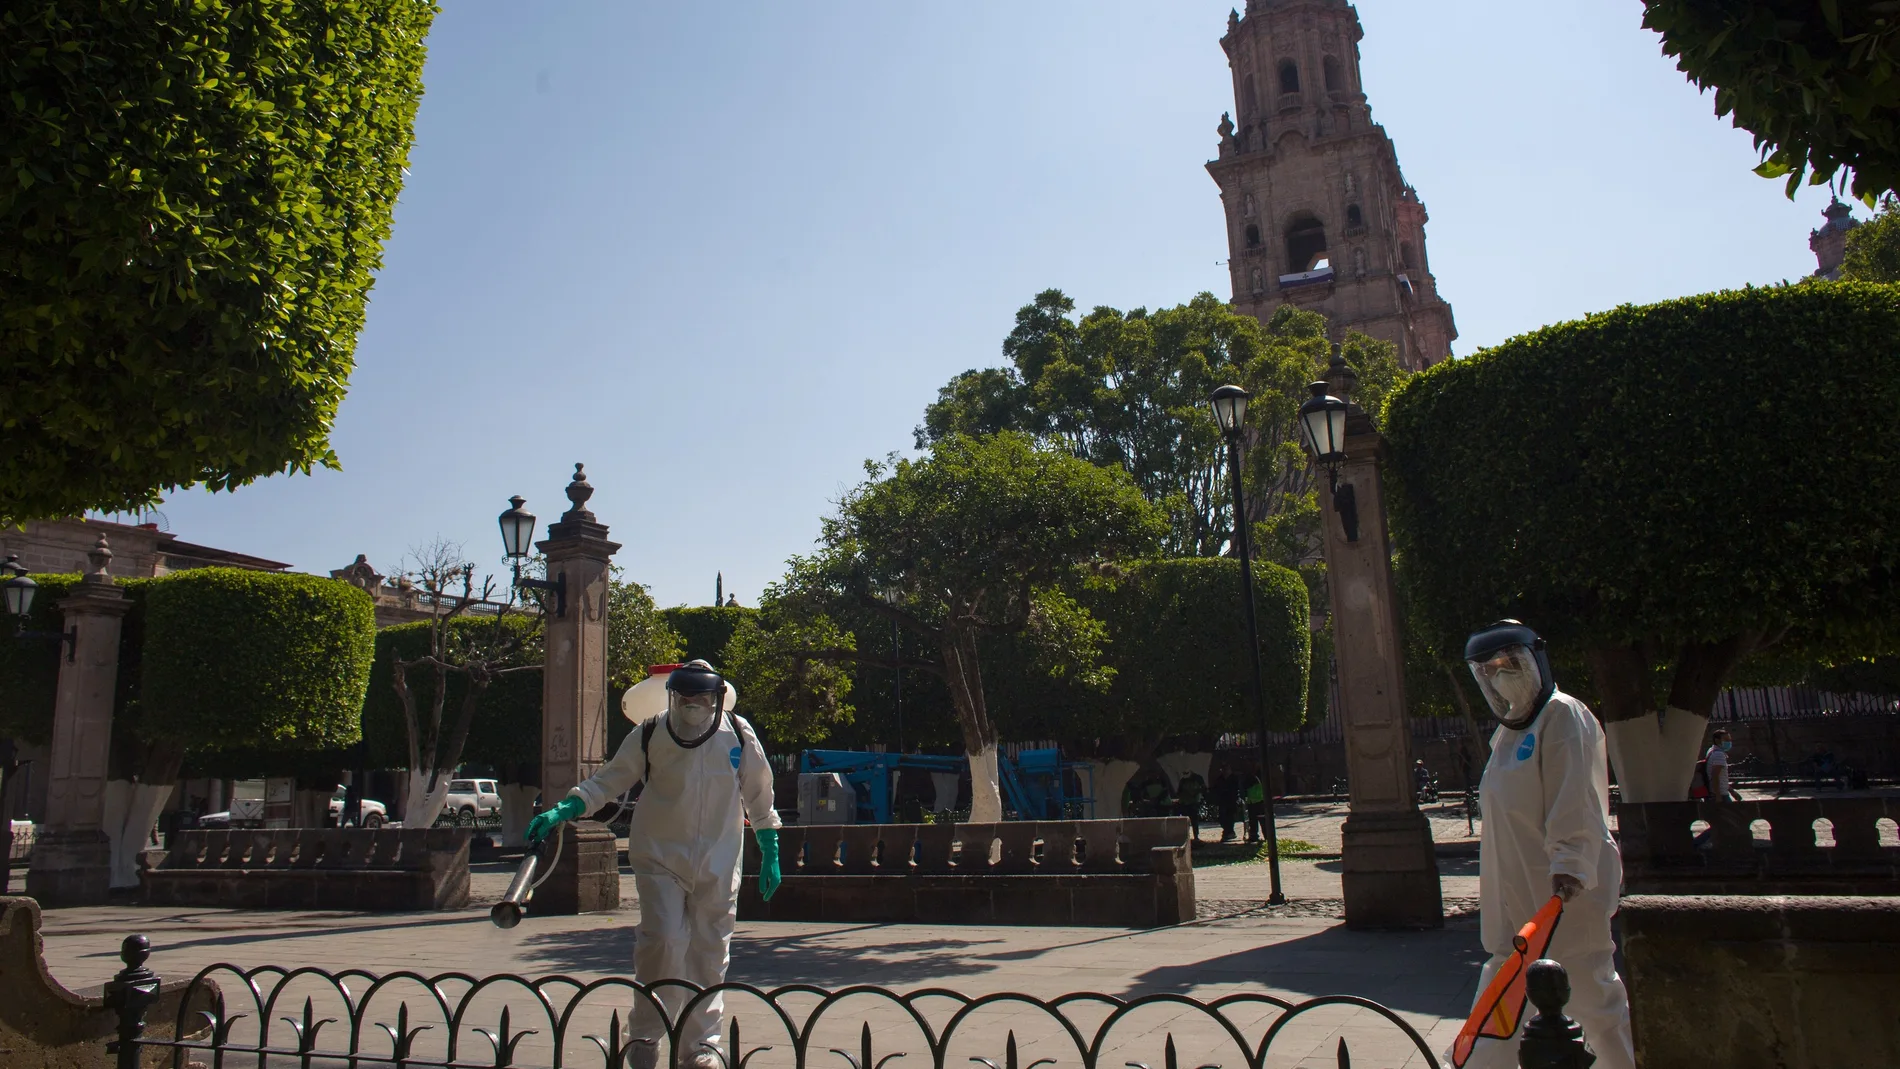 Limpieza de las Plazas Publicas en Morelia por COVID-19